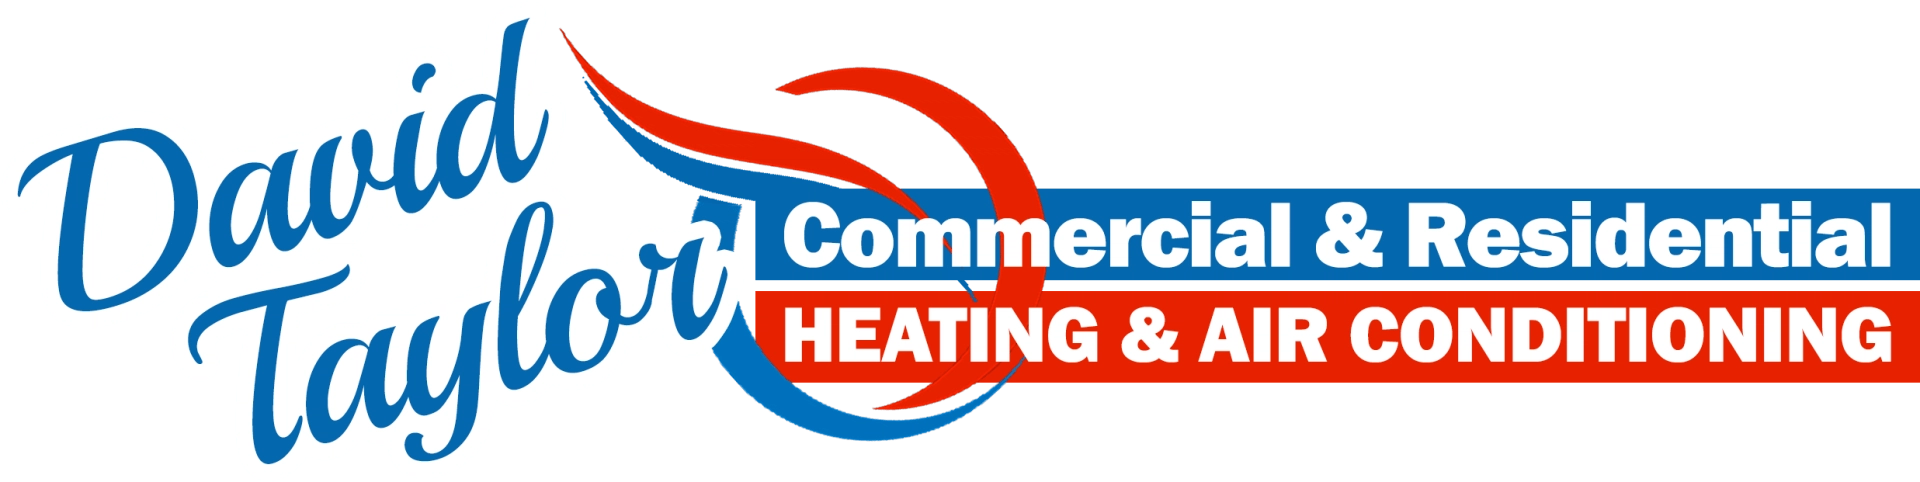 David Taylor Heating & Air Logo